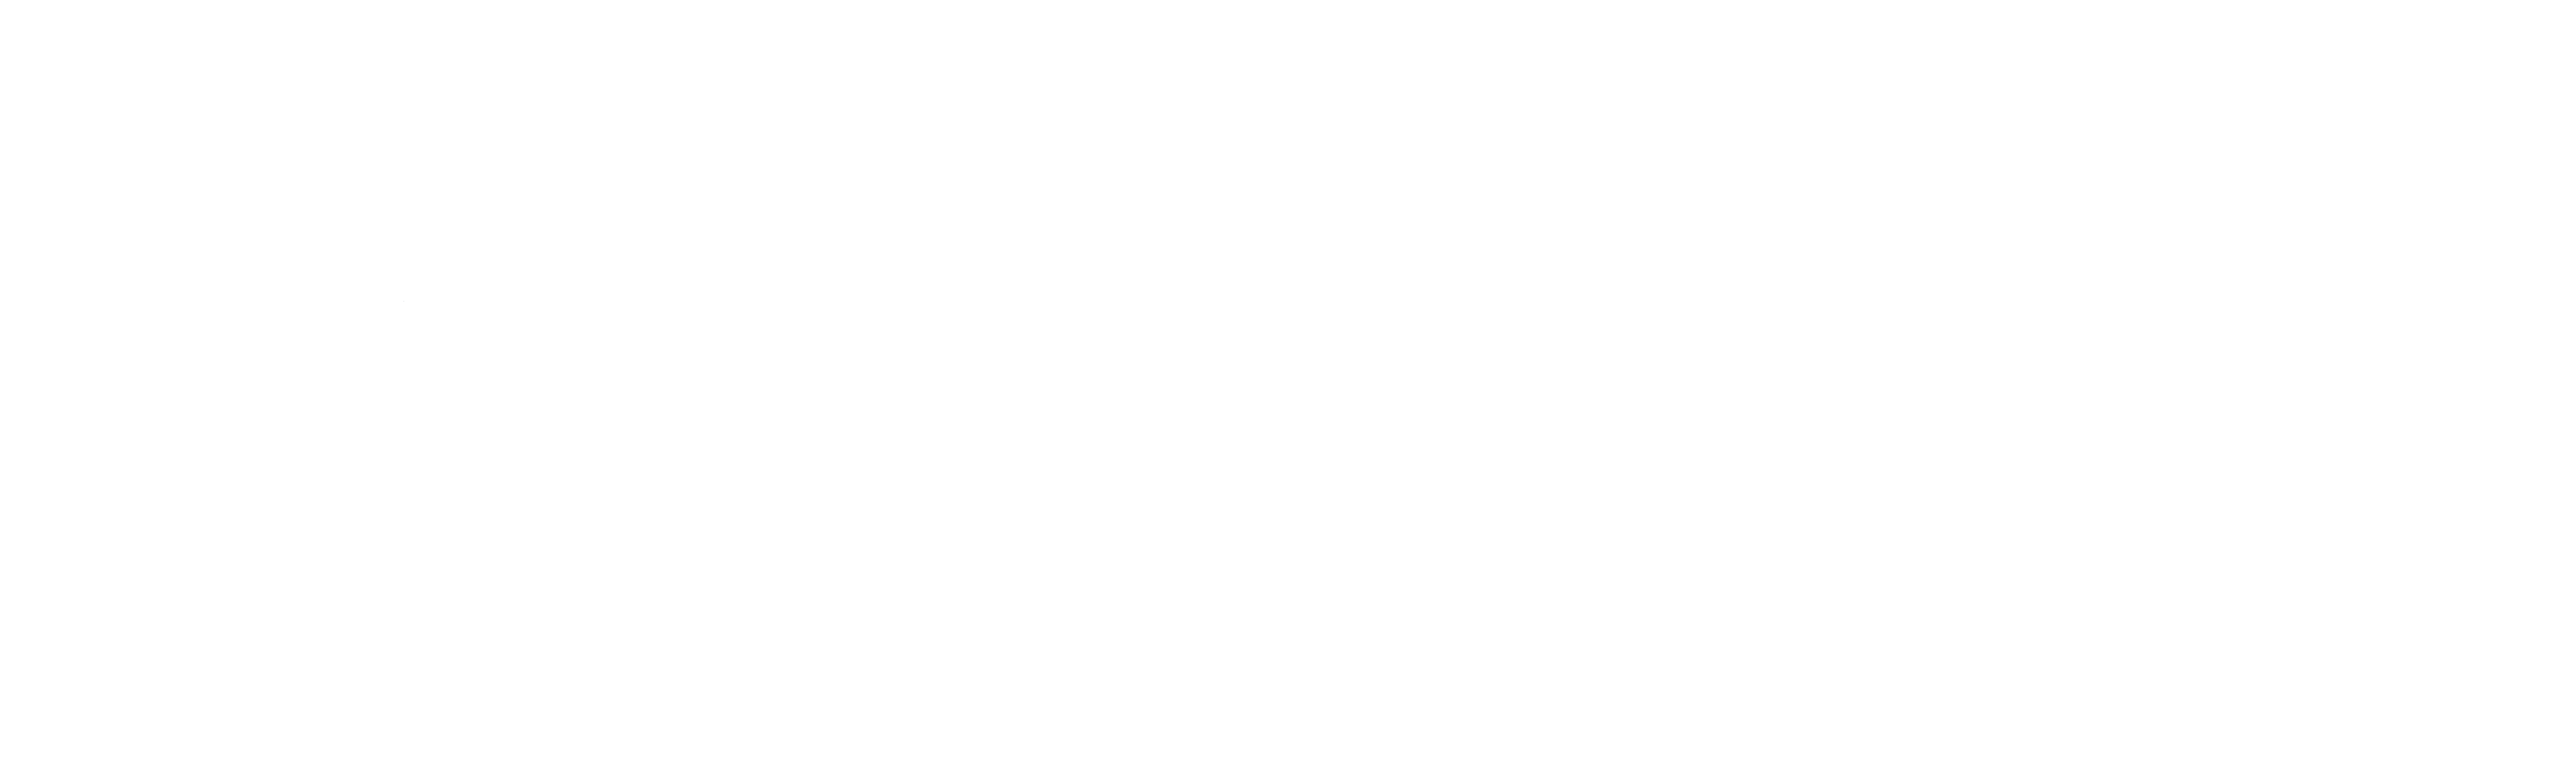 Main Logo for St Mary Basha Catholic School